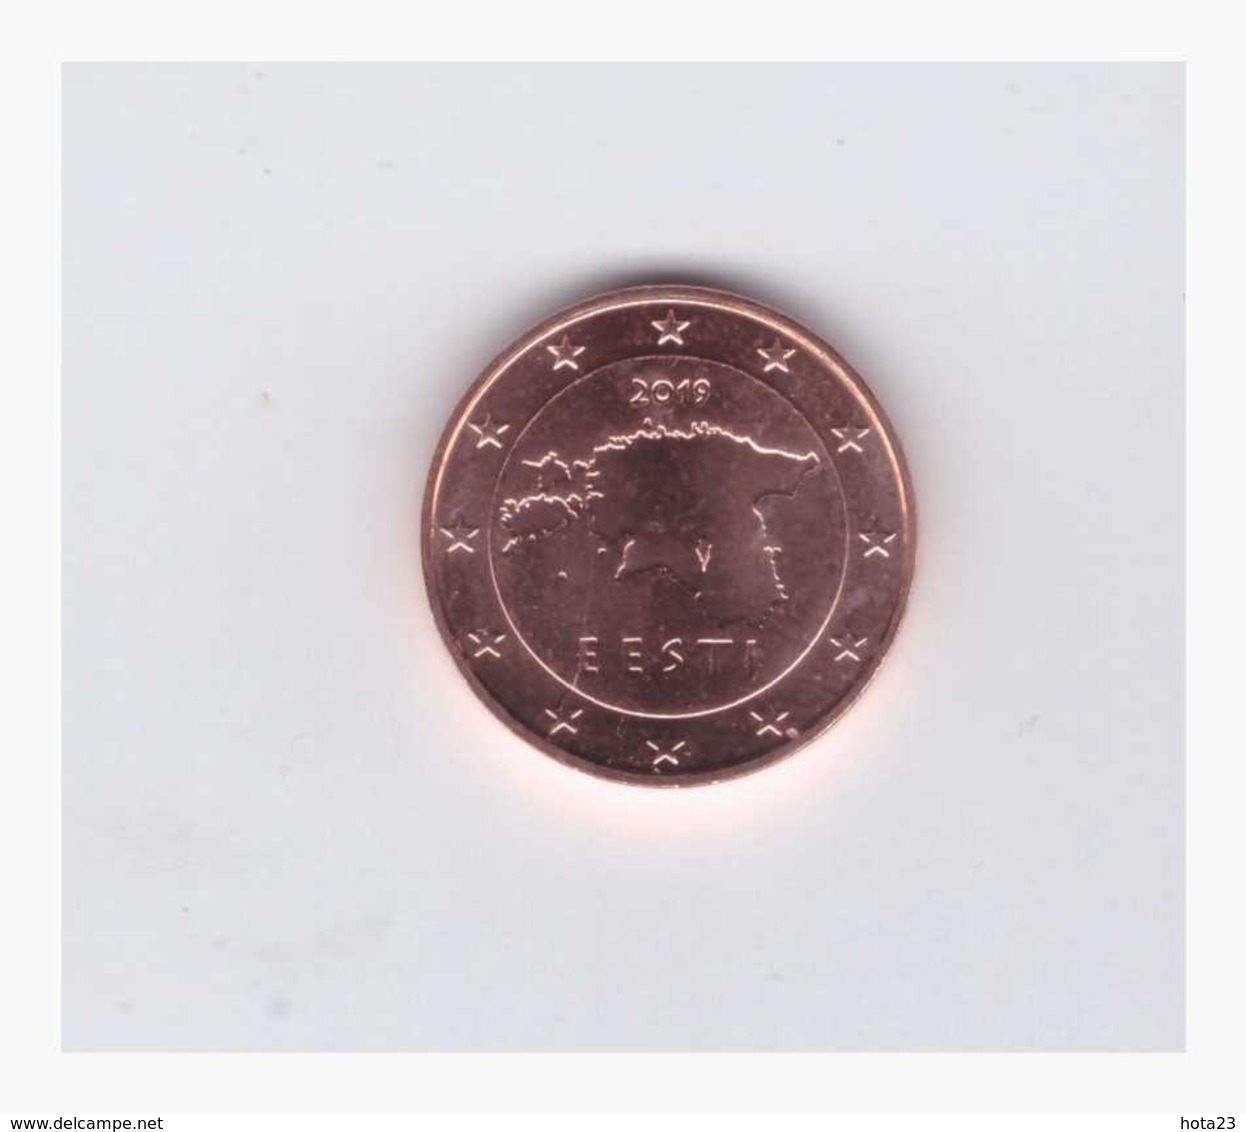 Estonia , ESTLAND , Eesti 2019 1 Euro Cent Coin From Roll UNC - Estland